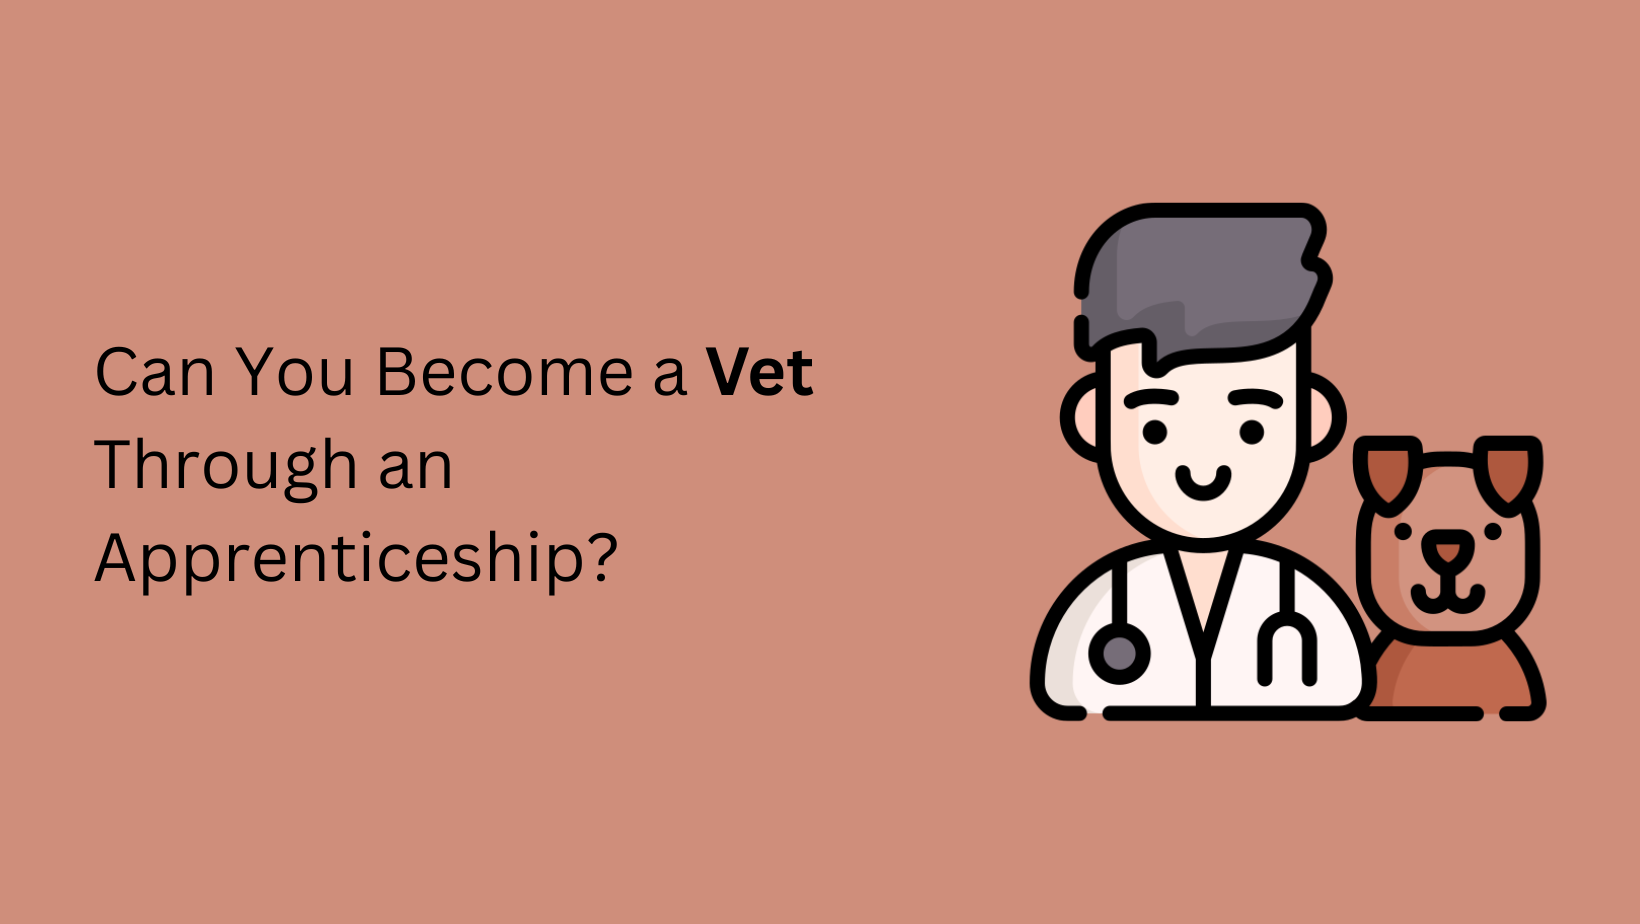 Can You Become a Vet Through an Apprenticeship